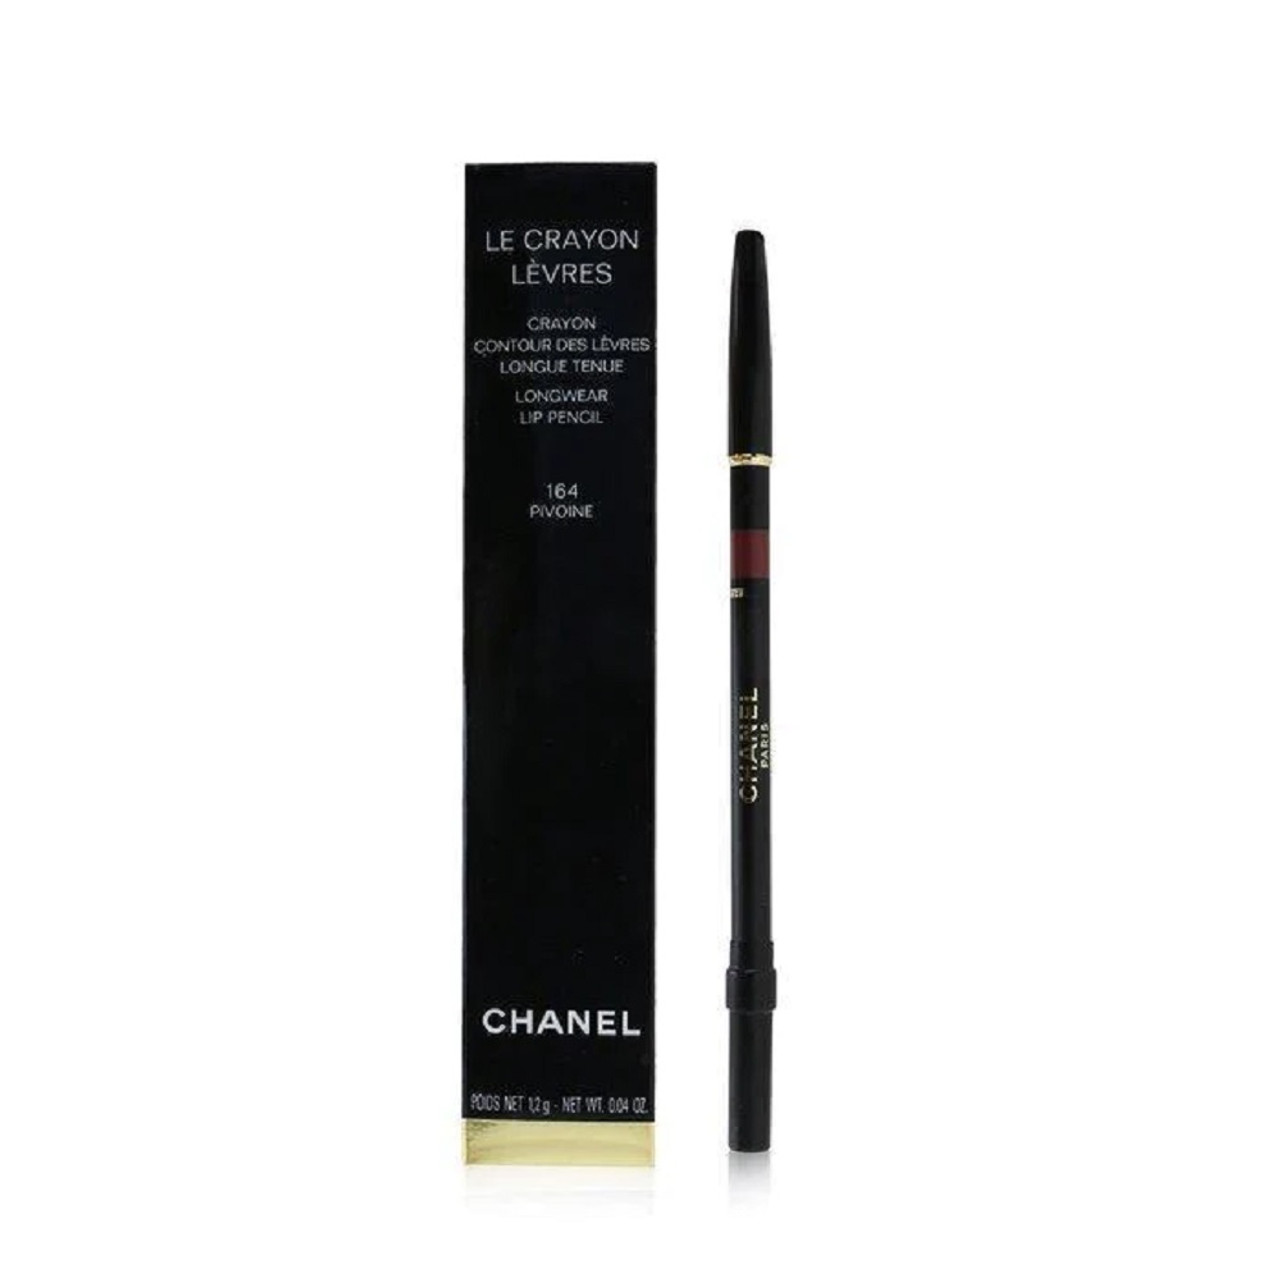 Chanel Pivoine (164) Le Crayon Levres Longwear Lip Pencil Review & Swatches